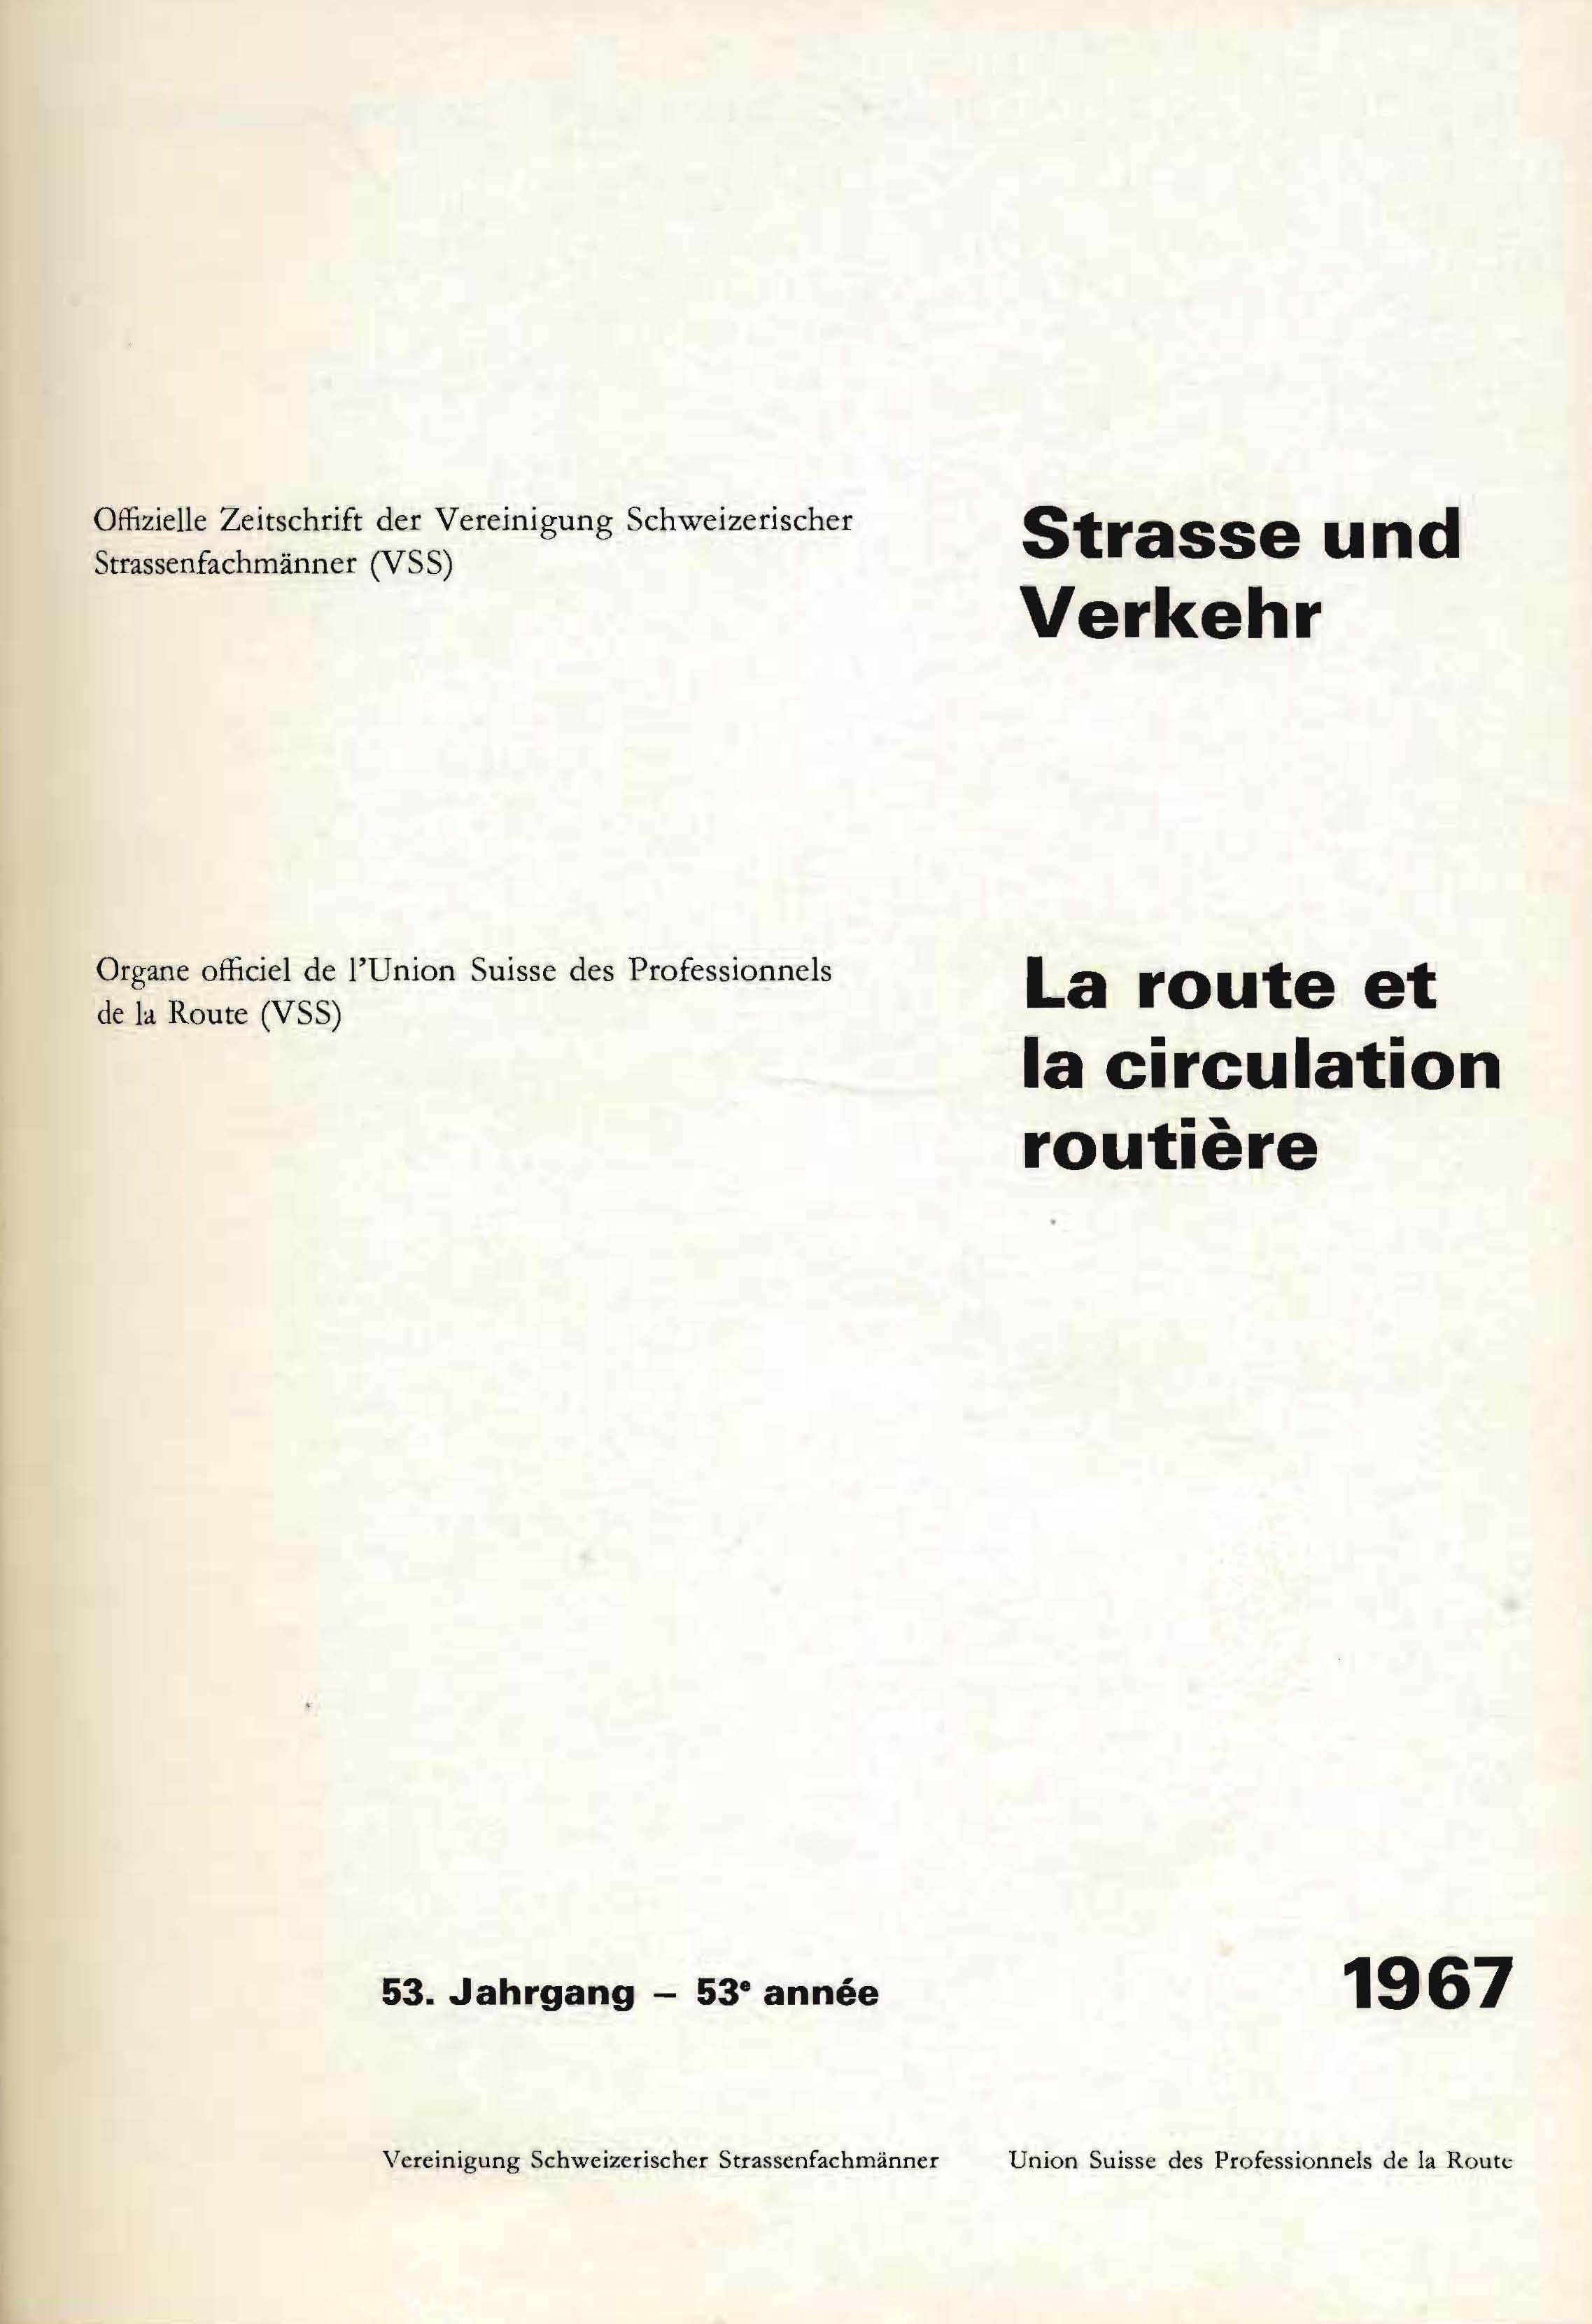 Strasse und Verkehr, 53. Jahrgang 1967